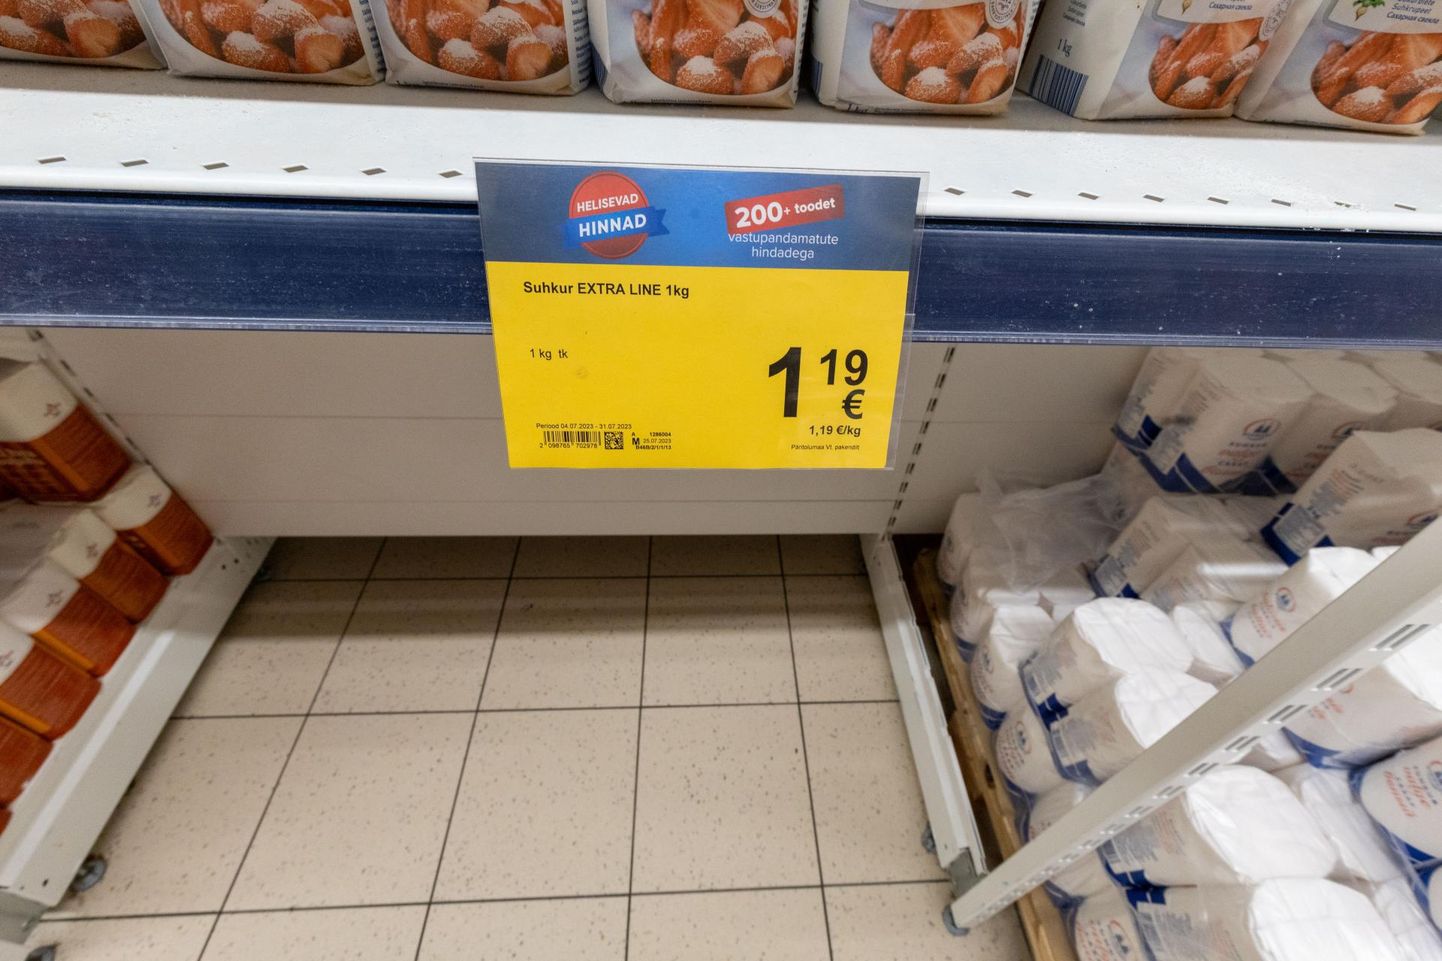 Вчера килограмм сахара в Maxima в торговом центре Zeppelin стоил 1,29 евро, а сахар, предлагаемый по акционной цене 1,19 евро за килограмм, был распродан еще в обед.